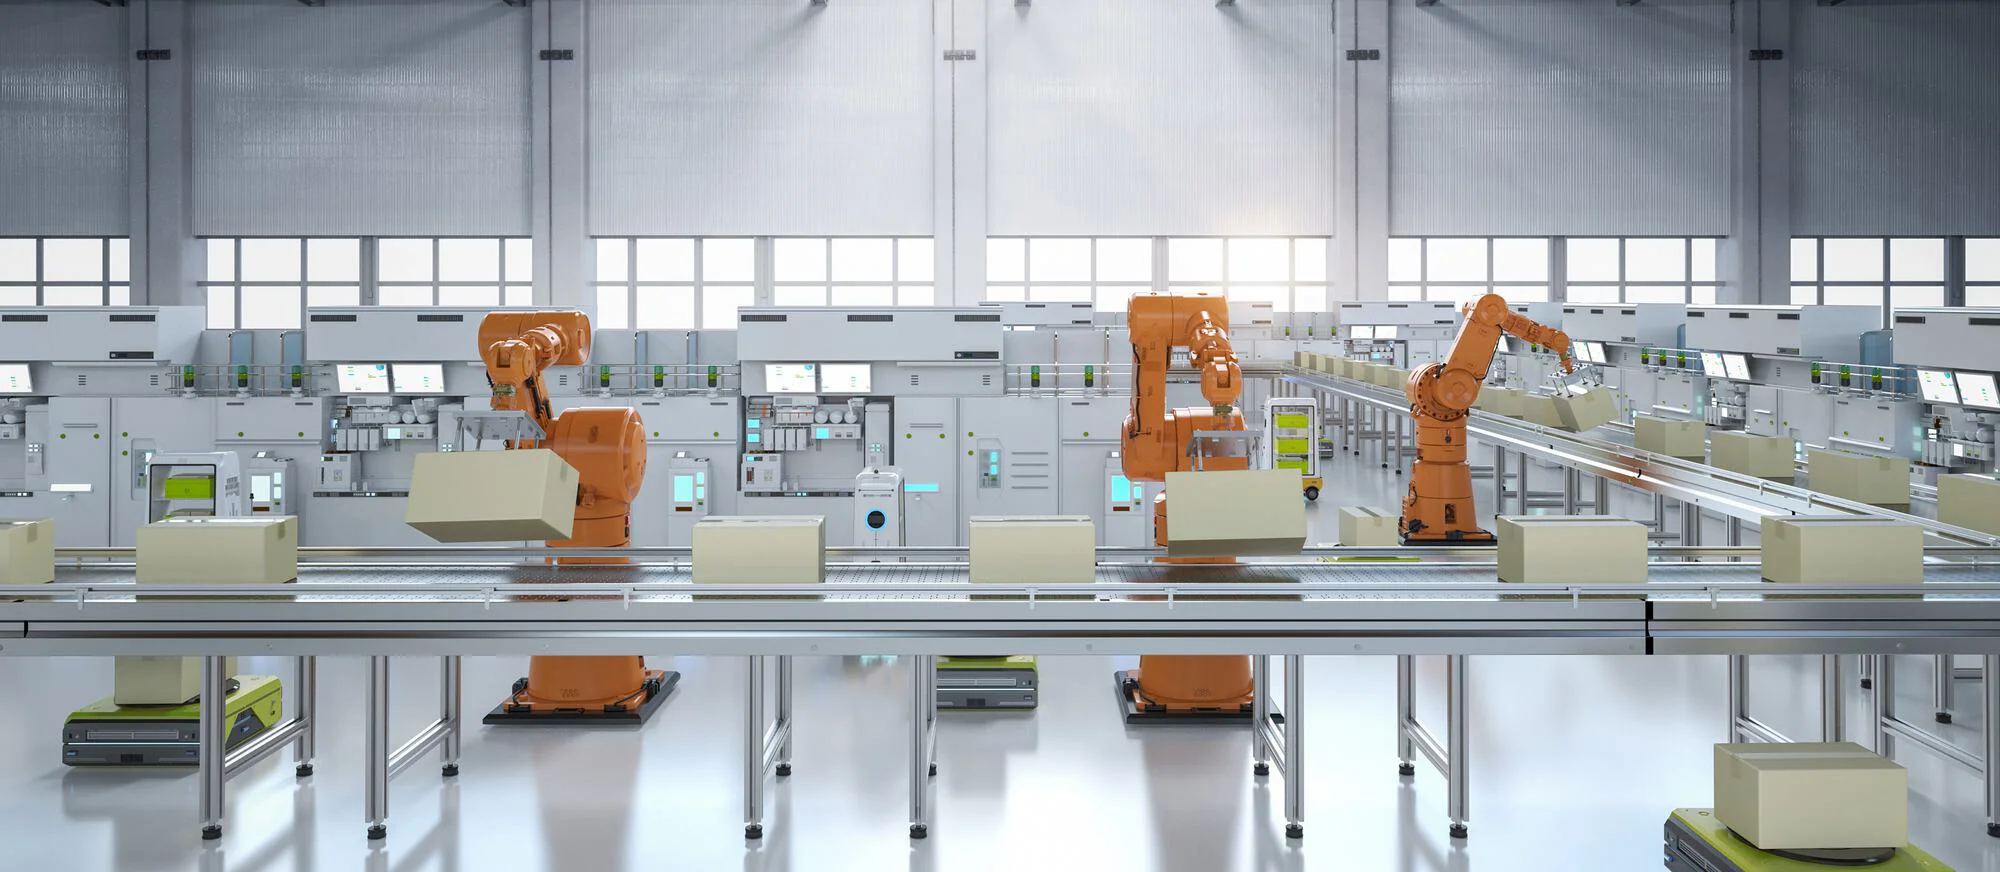 Das Bild zeigt eine große Halle mit vielen Arbeitsstationen, an denen orangefarbene Roboterarme verschiedene Aufgaben ausführen.